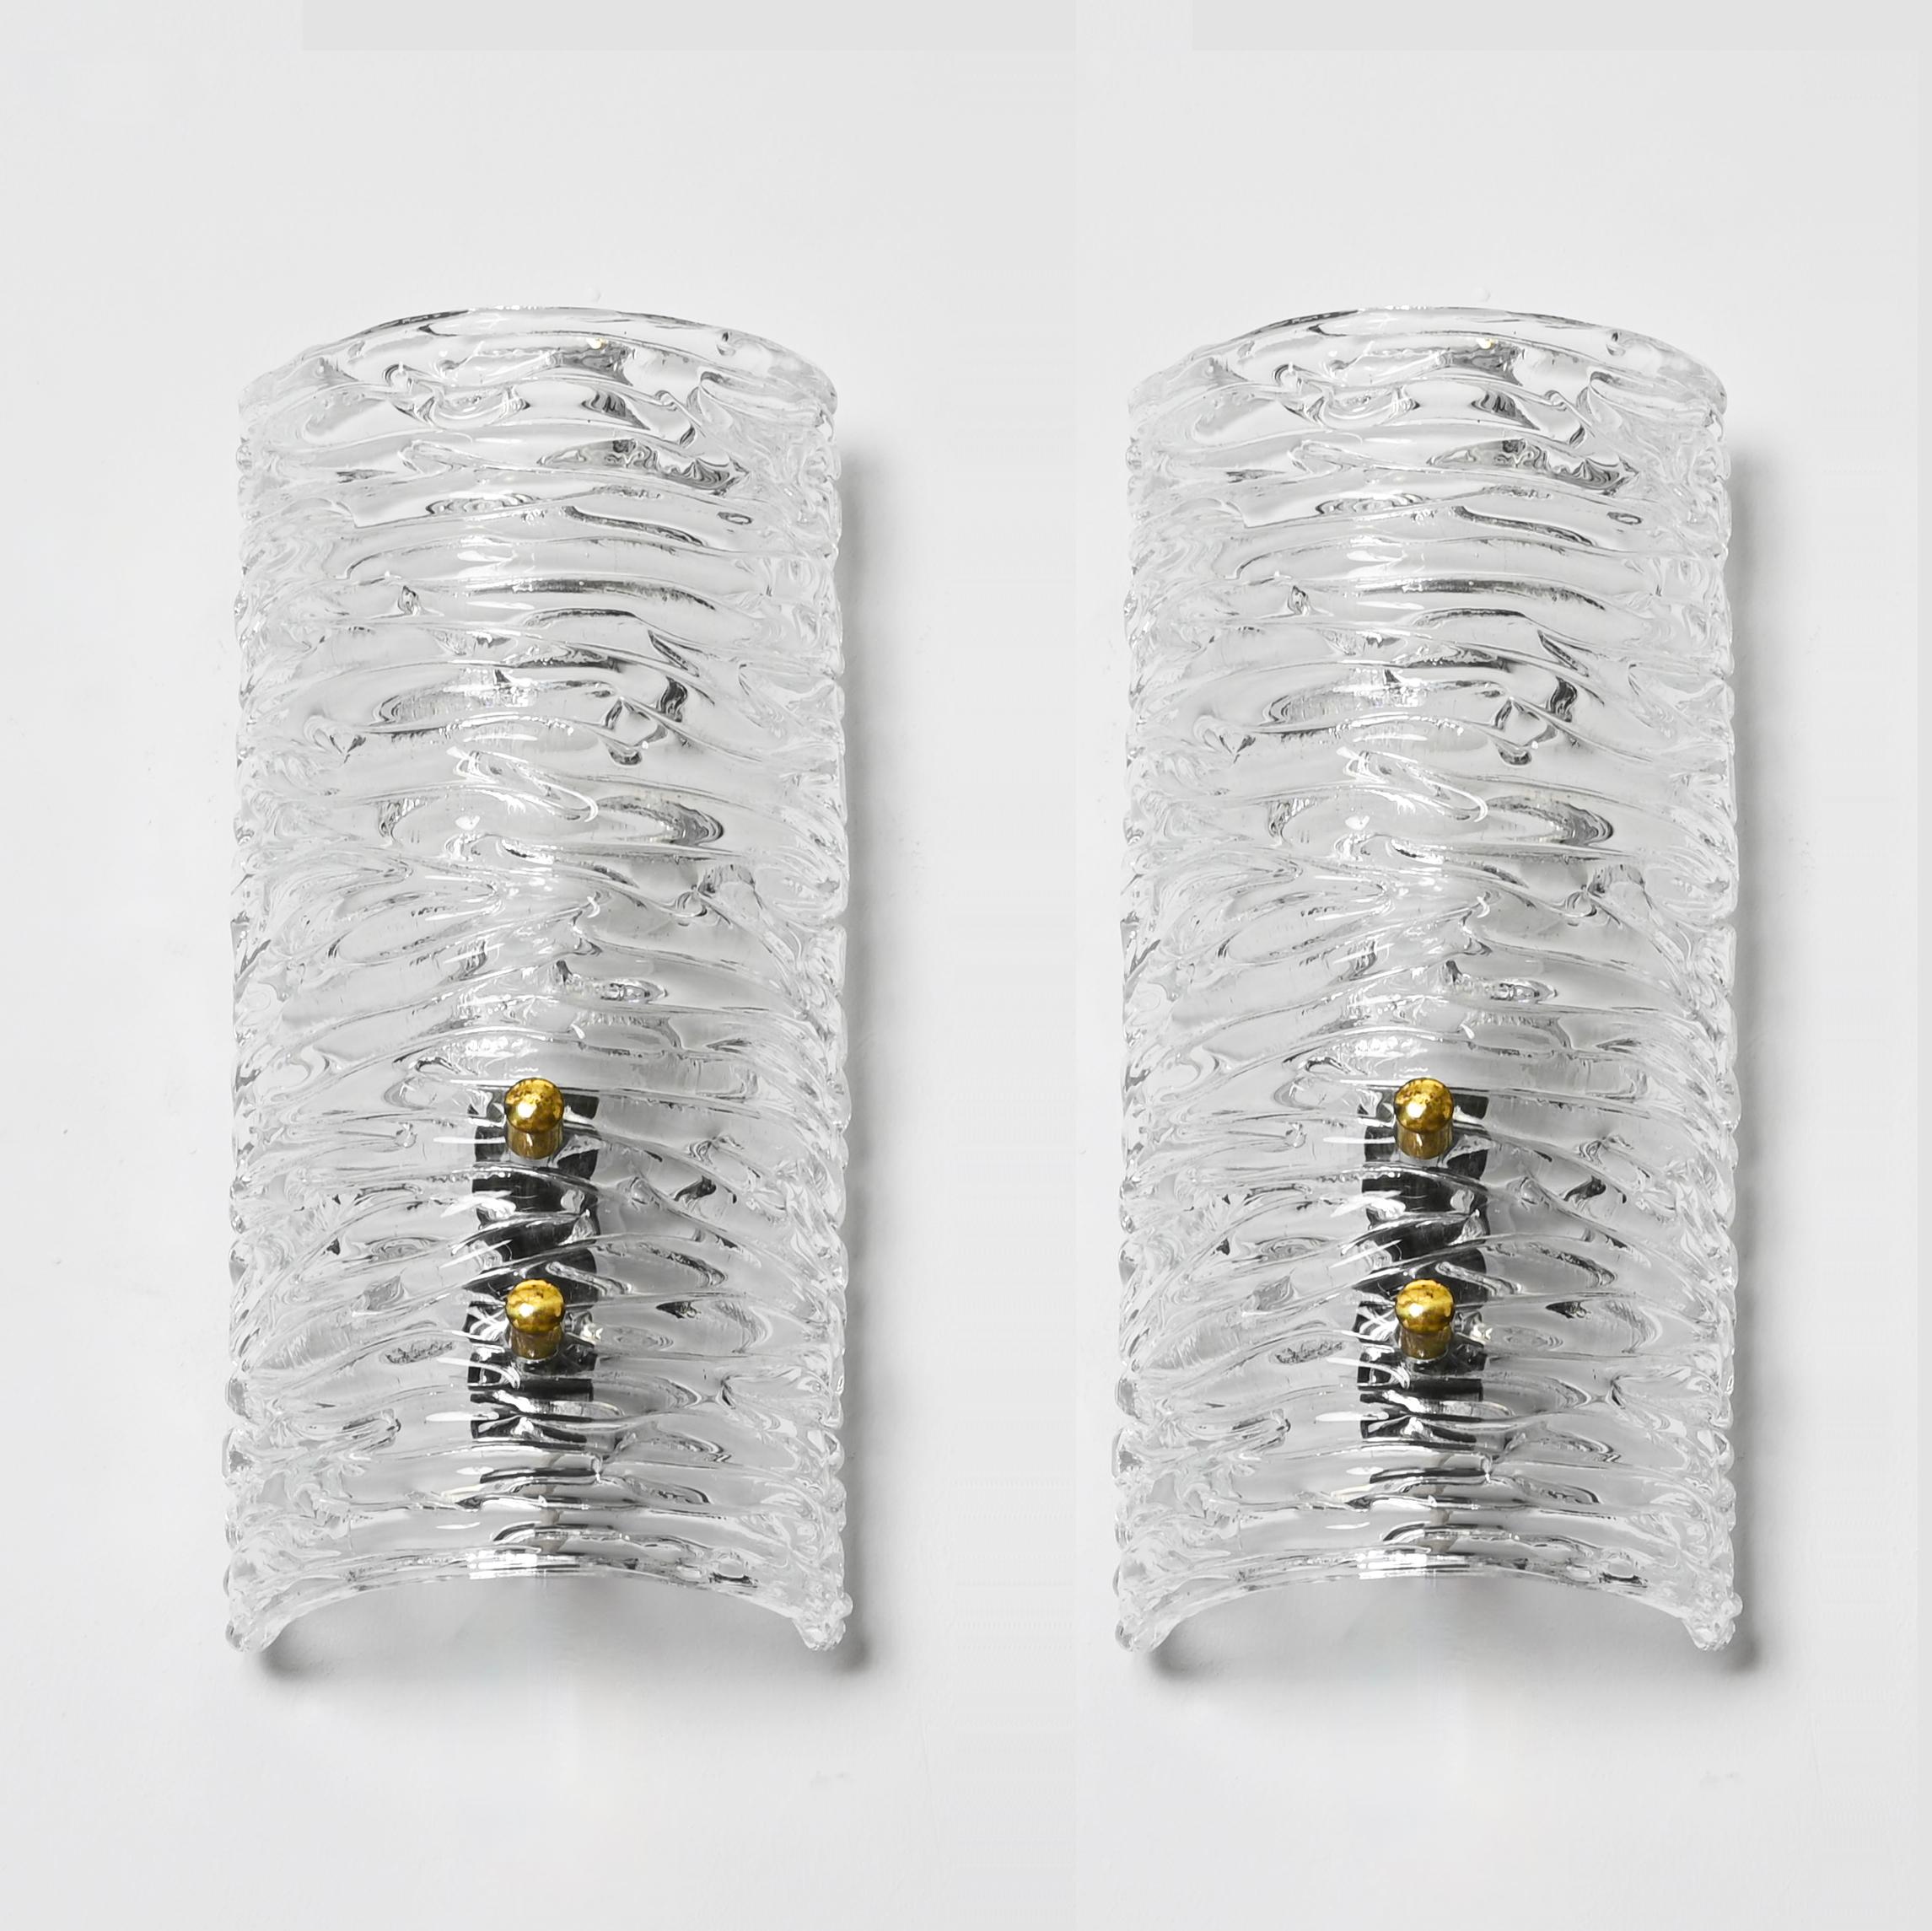 Fantastique paire d'appliques du milieu du siècle dernier en verre de cristal de Murano et en laiton. Ces magnifiques appliques ont été fabriquées en Italie dans les années 1950 et sont attribuées à Barovier&Toso.  

Ces appliques Murano finement